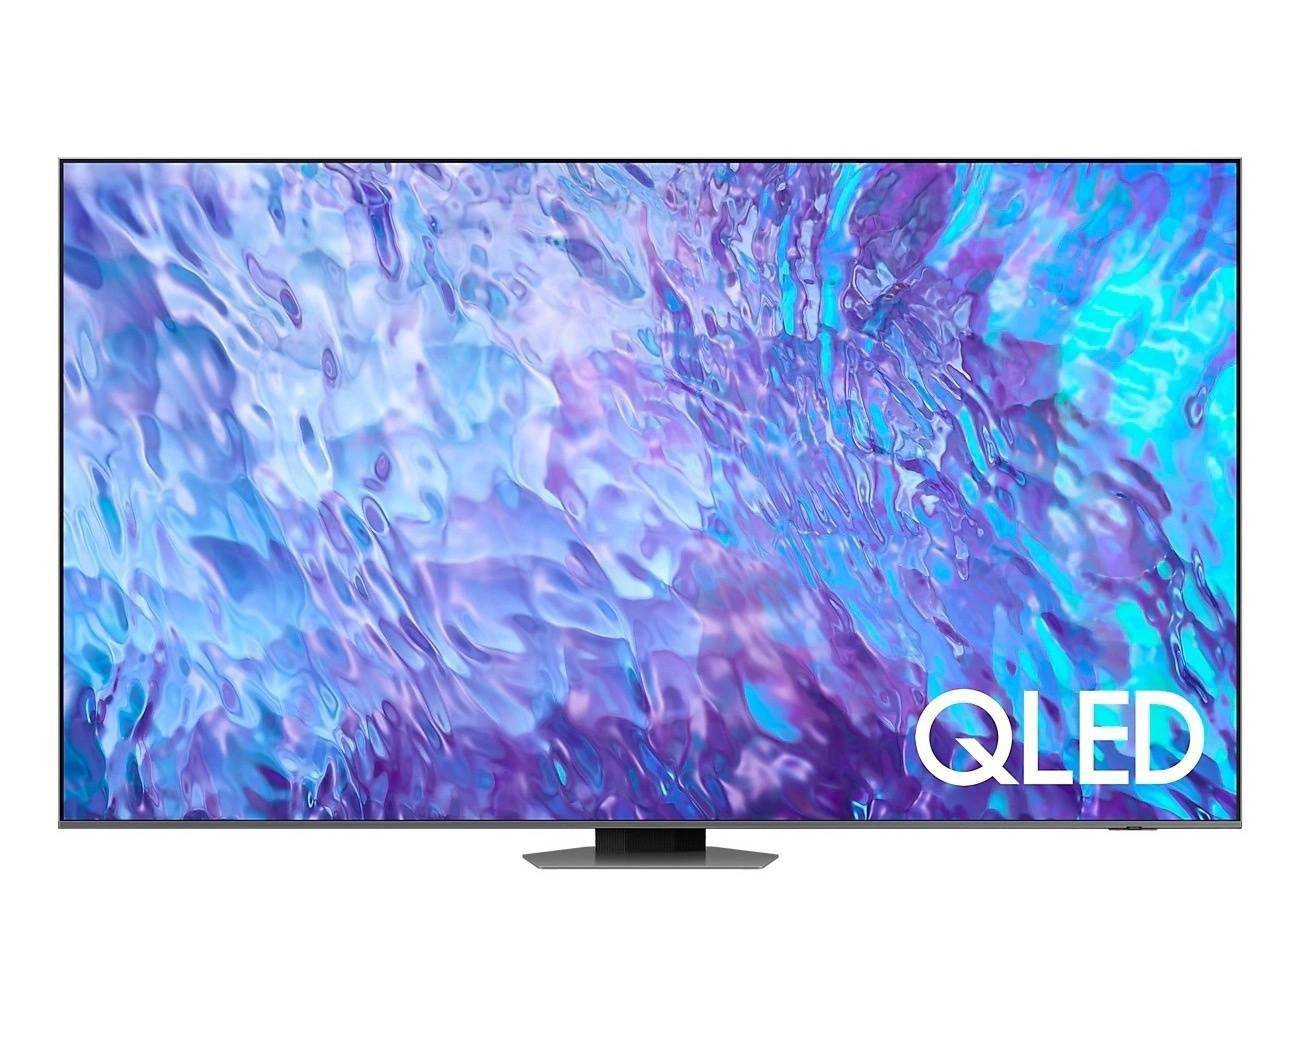 三星98英寸新品巨幕电视Q80Z正式上市 支持杜比全景声和Q交响乐技术